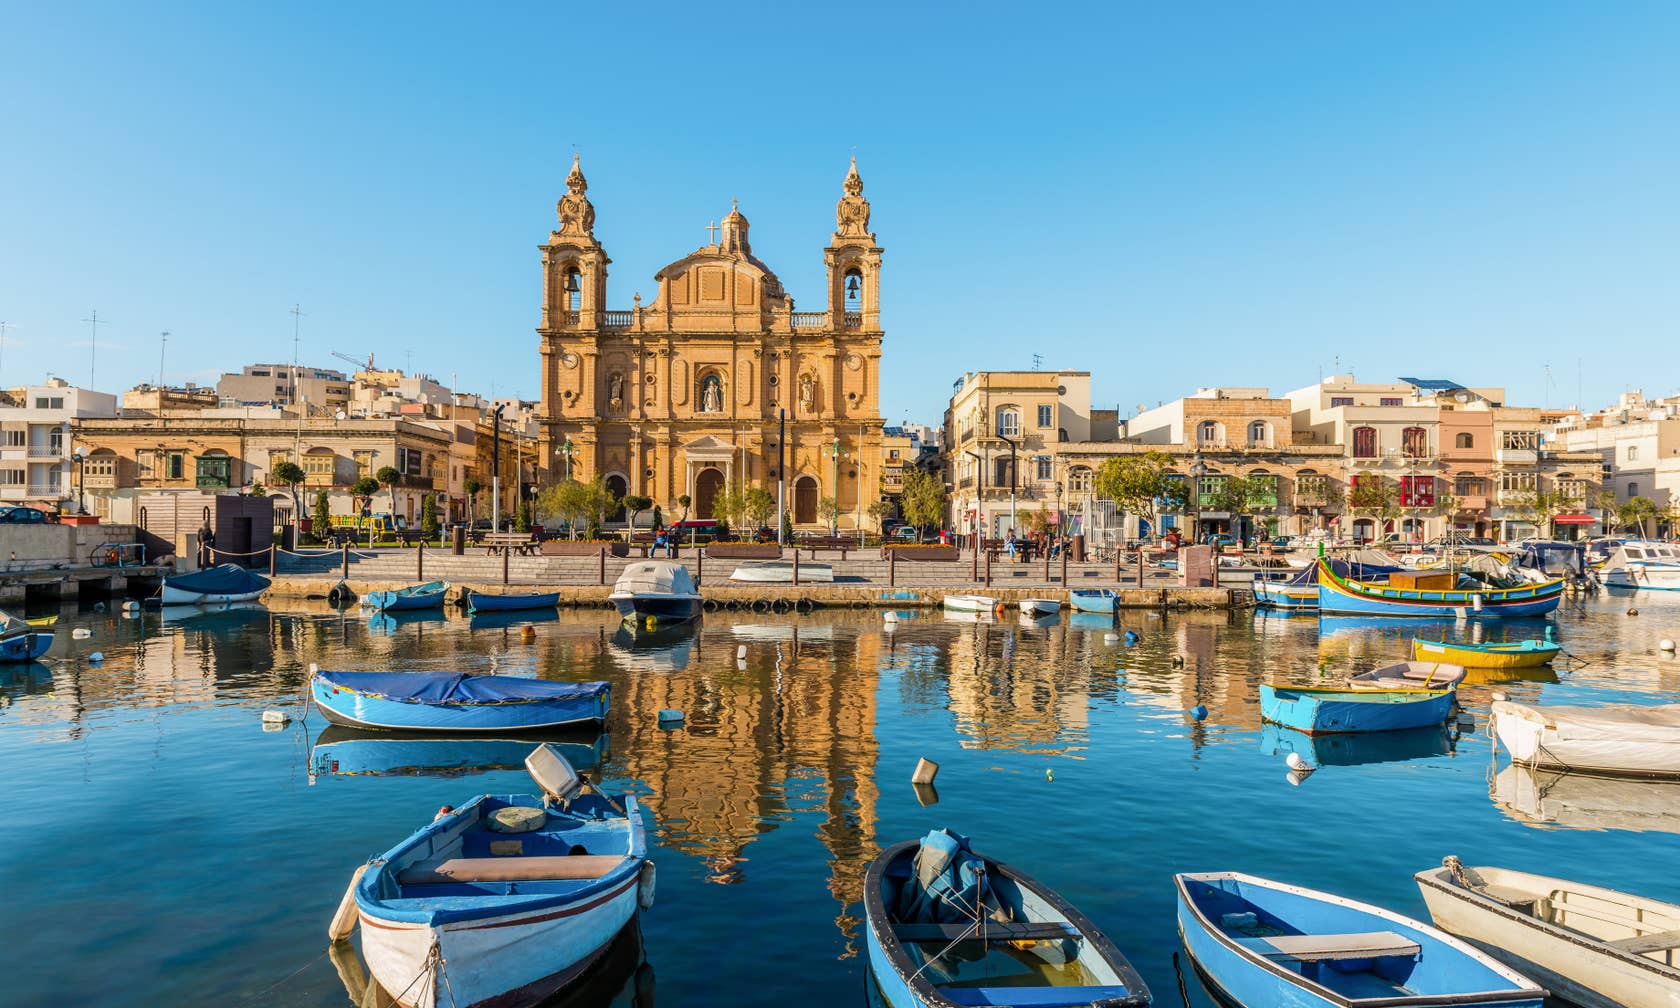 Affitti per le vacanze a Malta